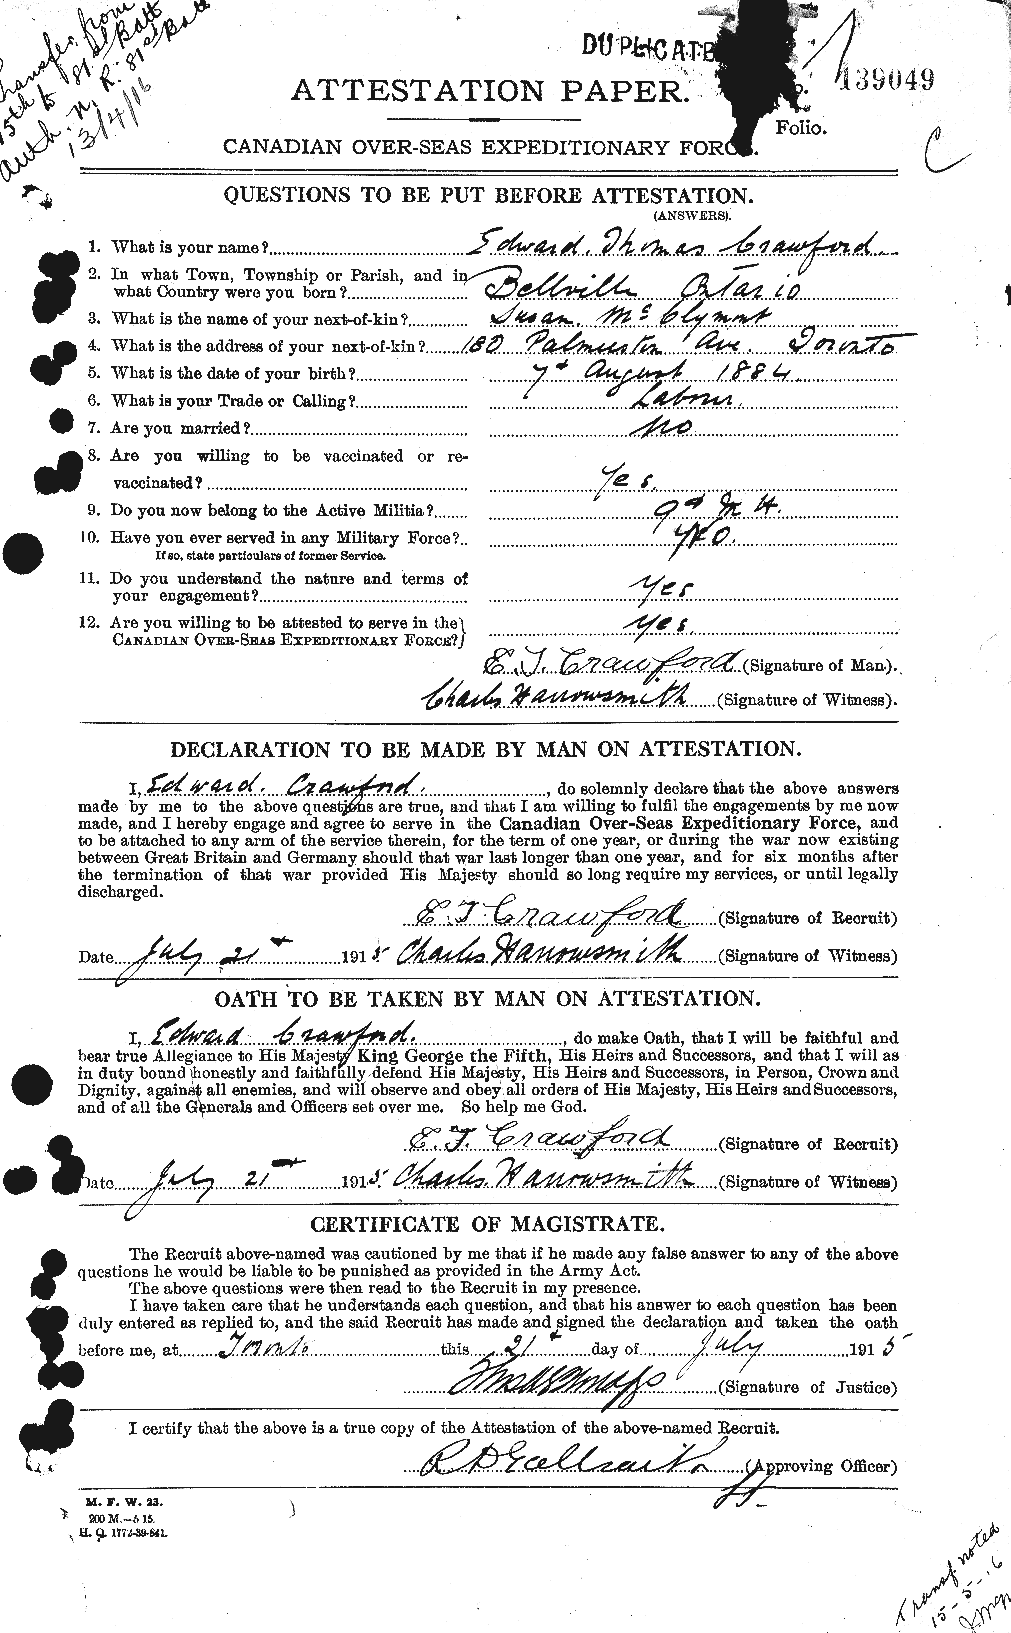 Dossiers du Personnel de la Première Guerre mondiale - CEC 060749a